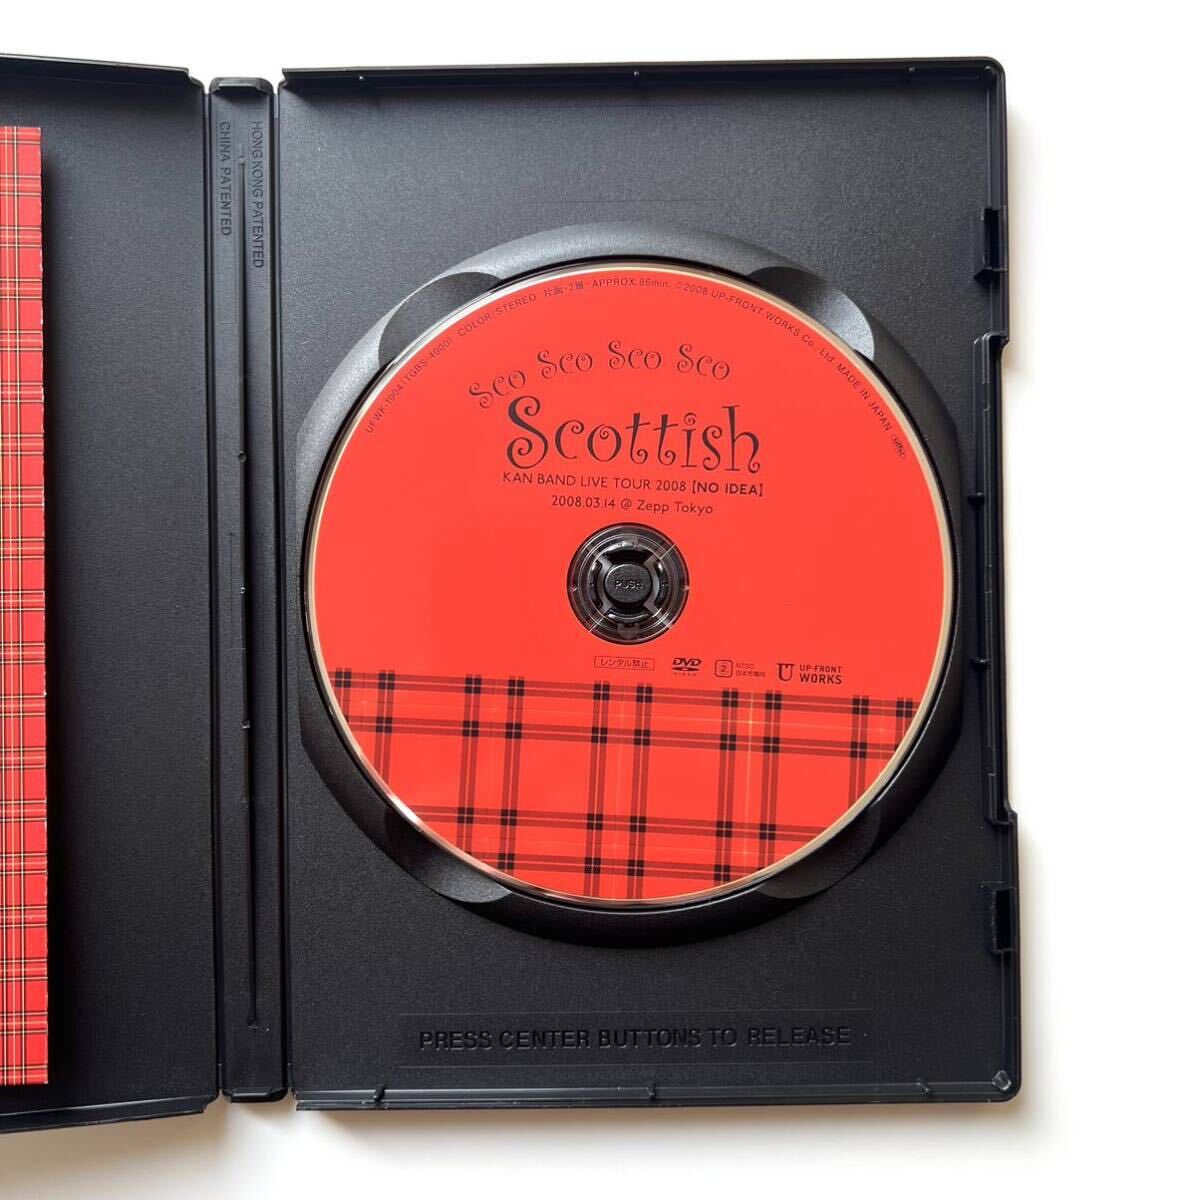 【ほぼ新品】KAN LIVE DVD『Sco Sco Sco Sco Scottish』_画像3